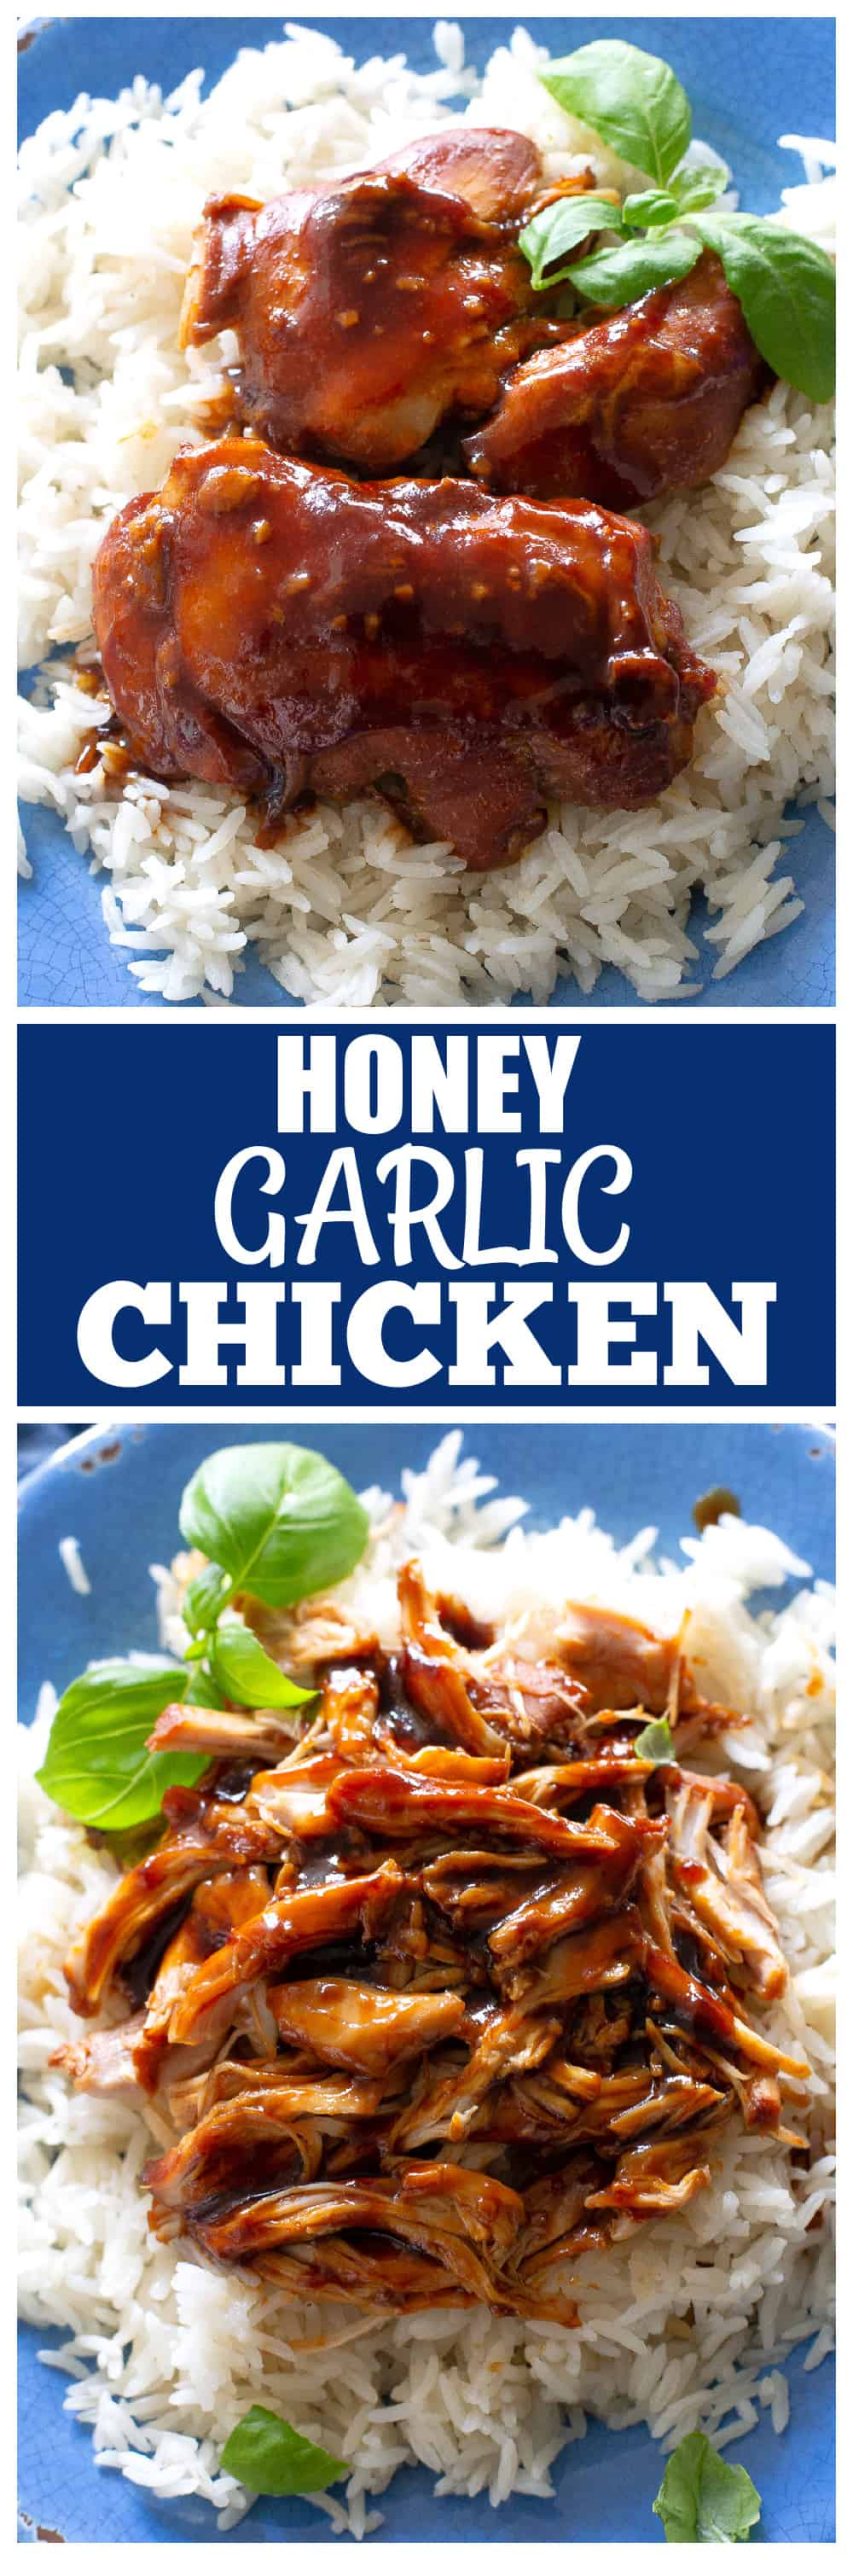 honey garlic chicken scaled - Honey Garlic Chicken